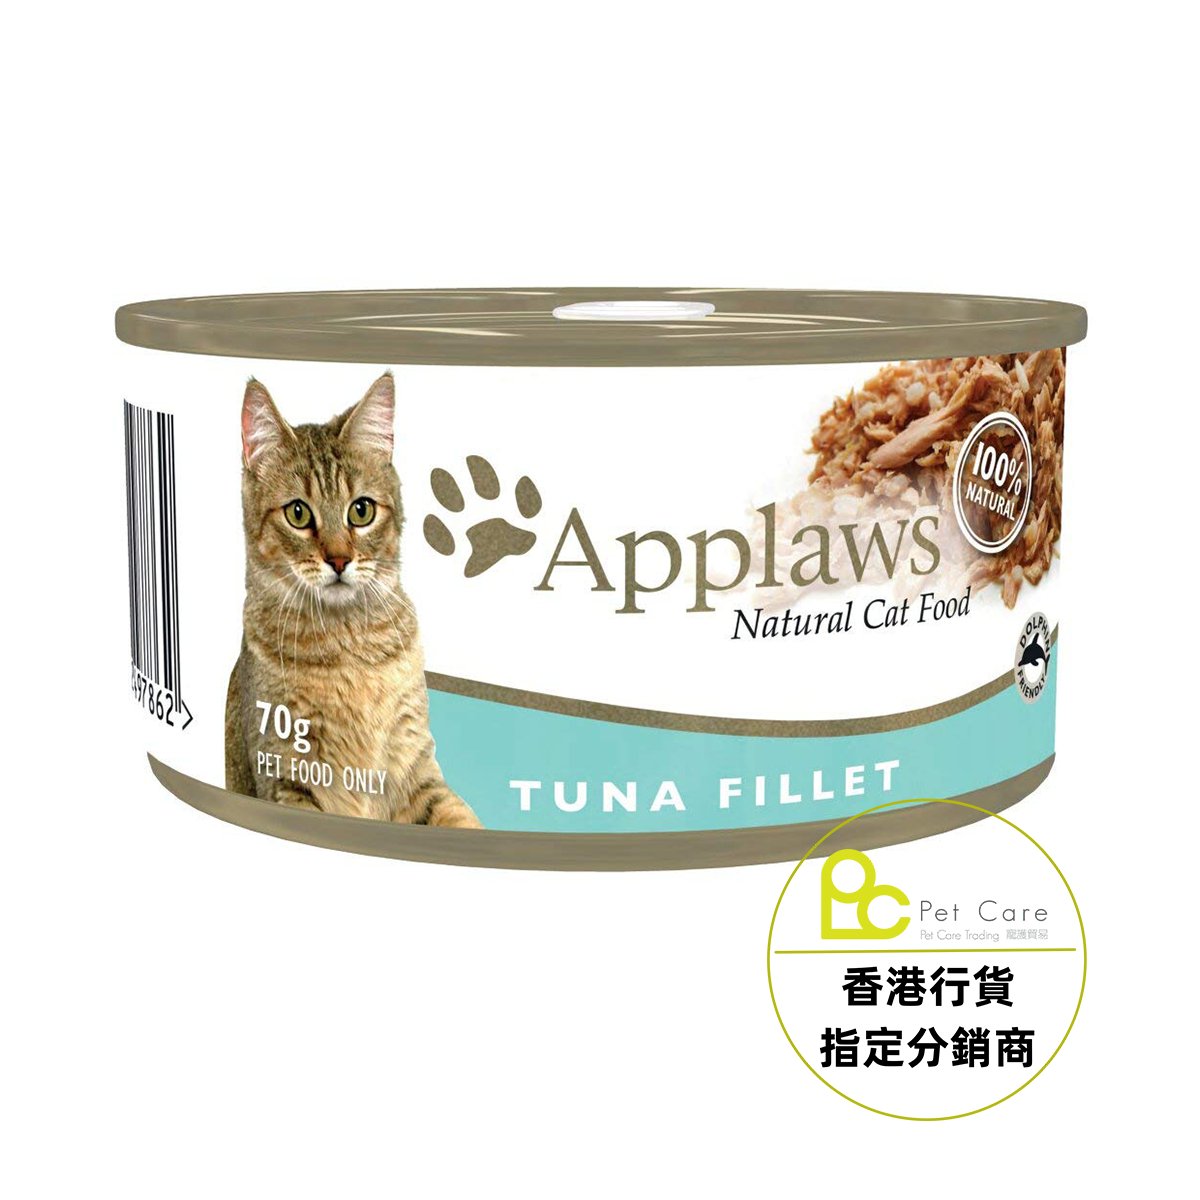 Applaws 全天然 貓罐頭 - 吞拿魚 70g (細)